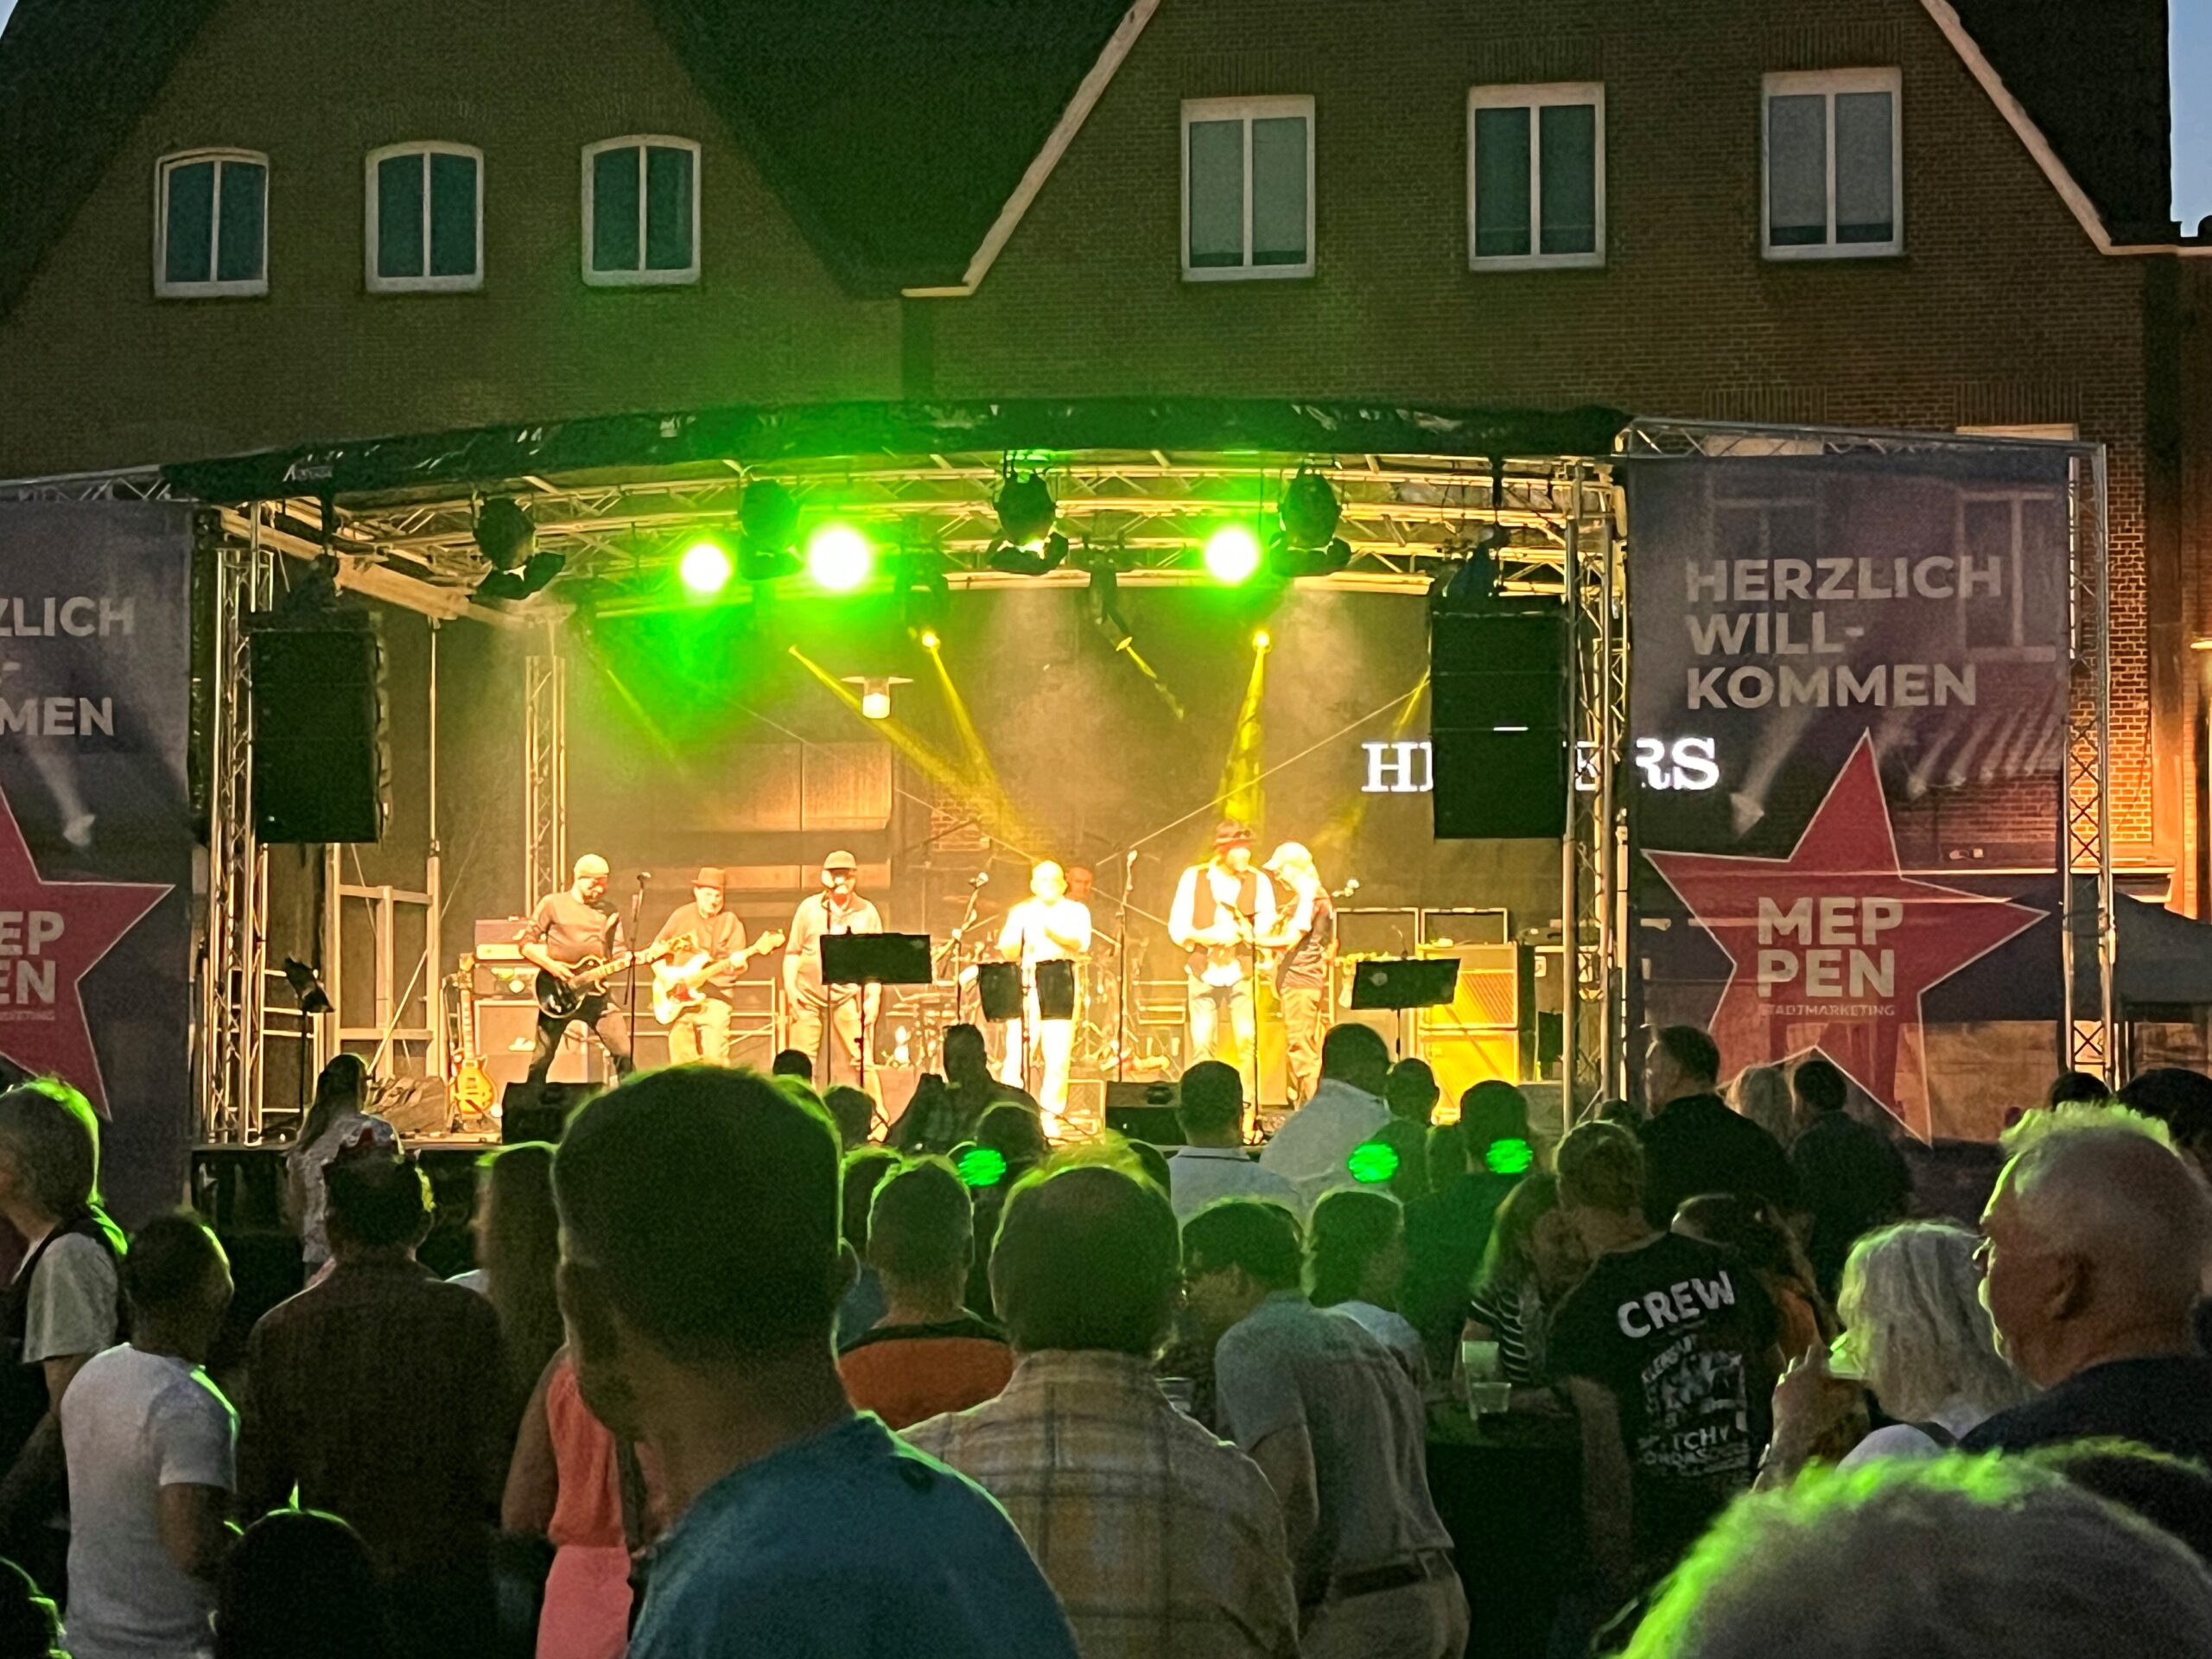 Stimmungsvolle Musik erwartet die Besucher in der Innenstadt.
Foto: Stadt Meppen